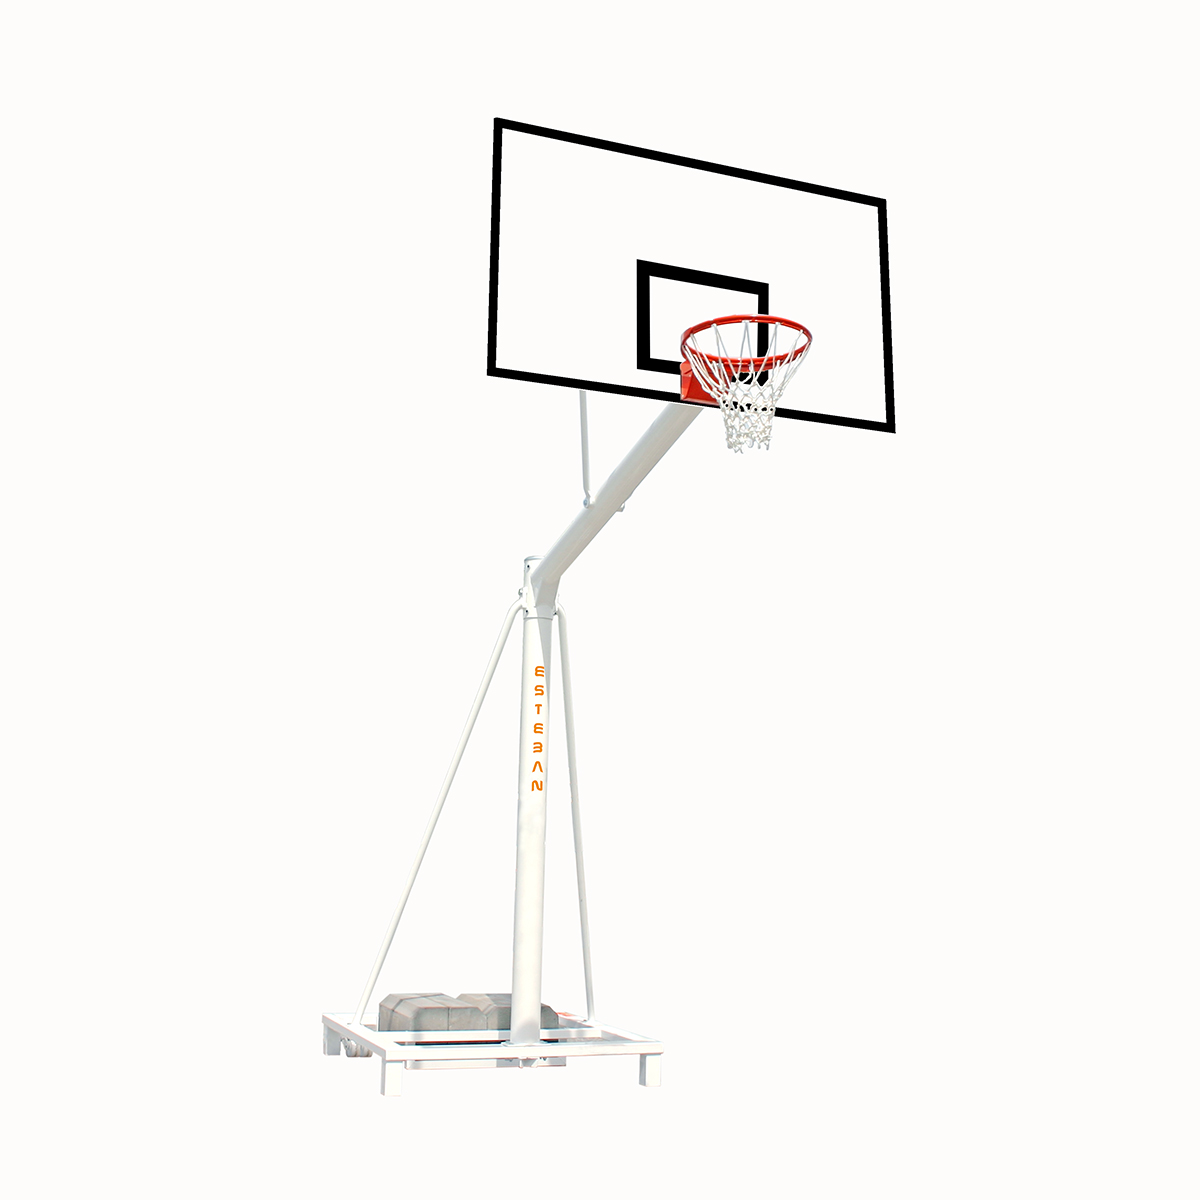 Canasta baloncesto trasladable tablero impermeable extensión 165 cm BT16520- 1 - ESTEBAN SG&E